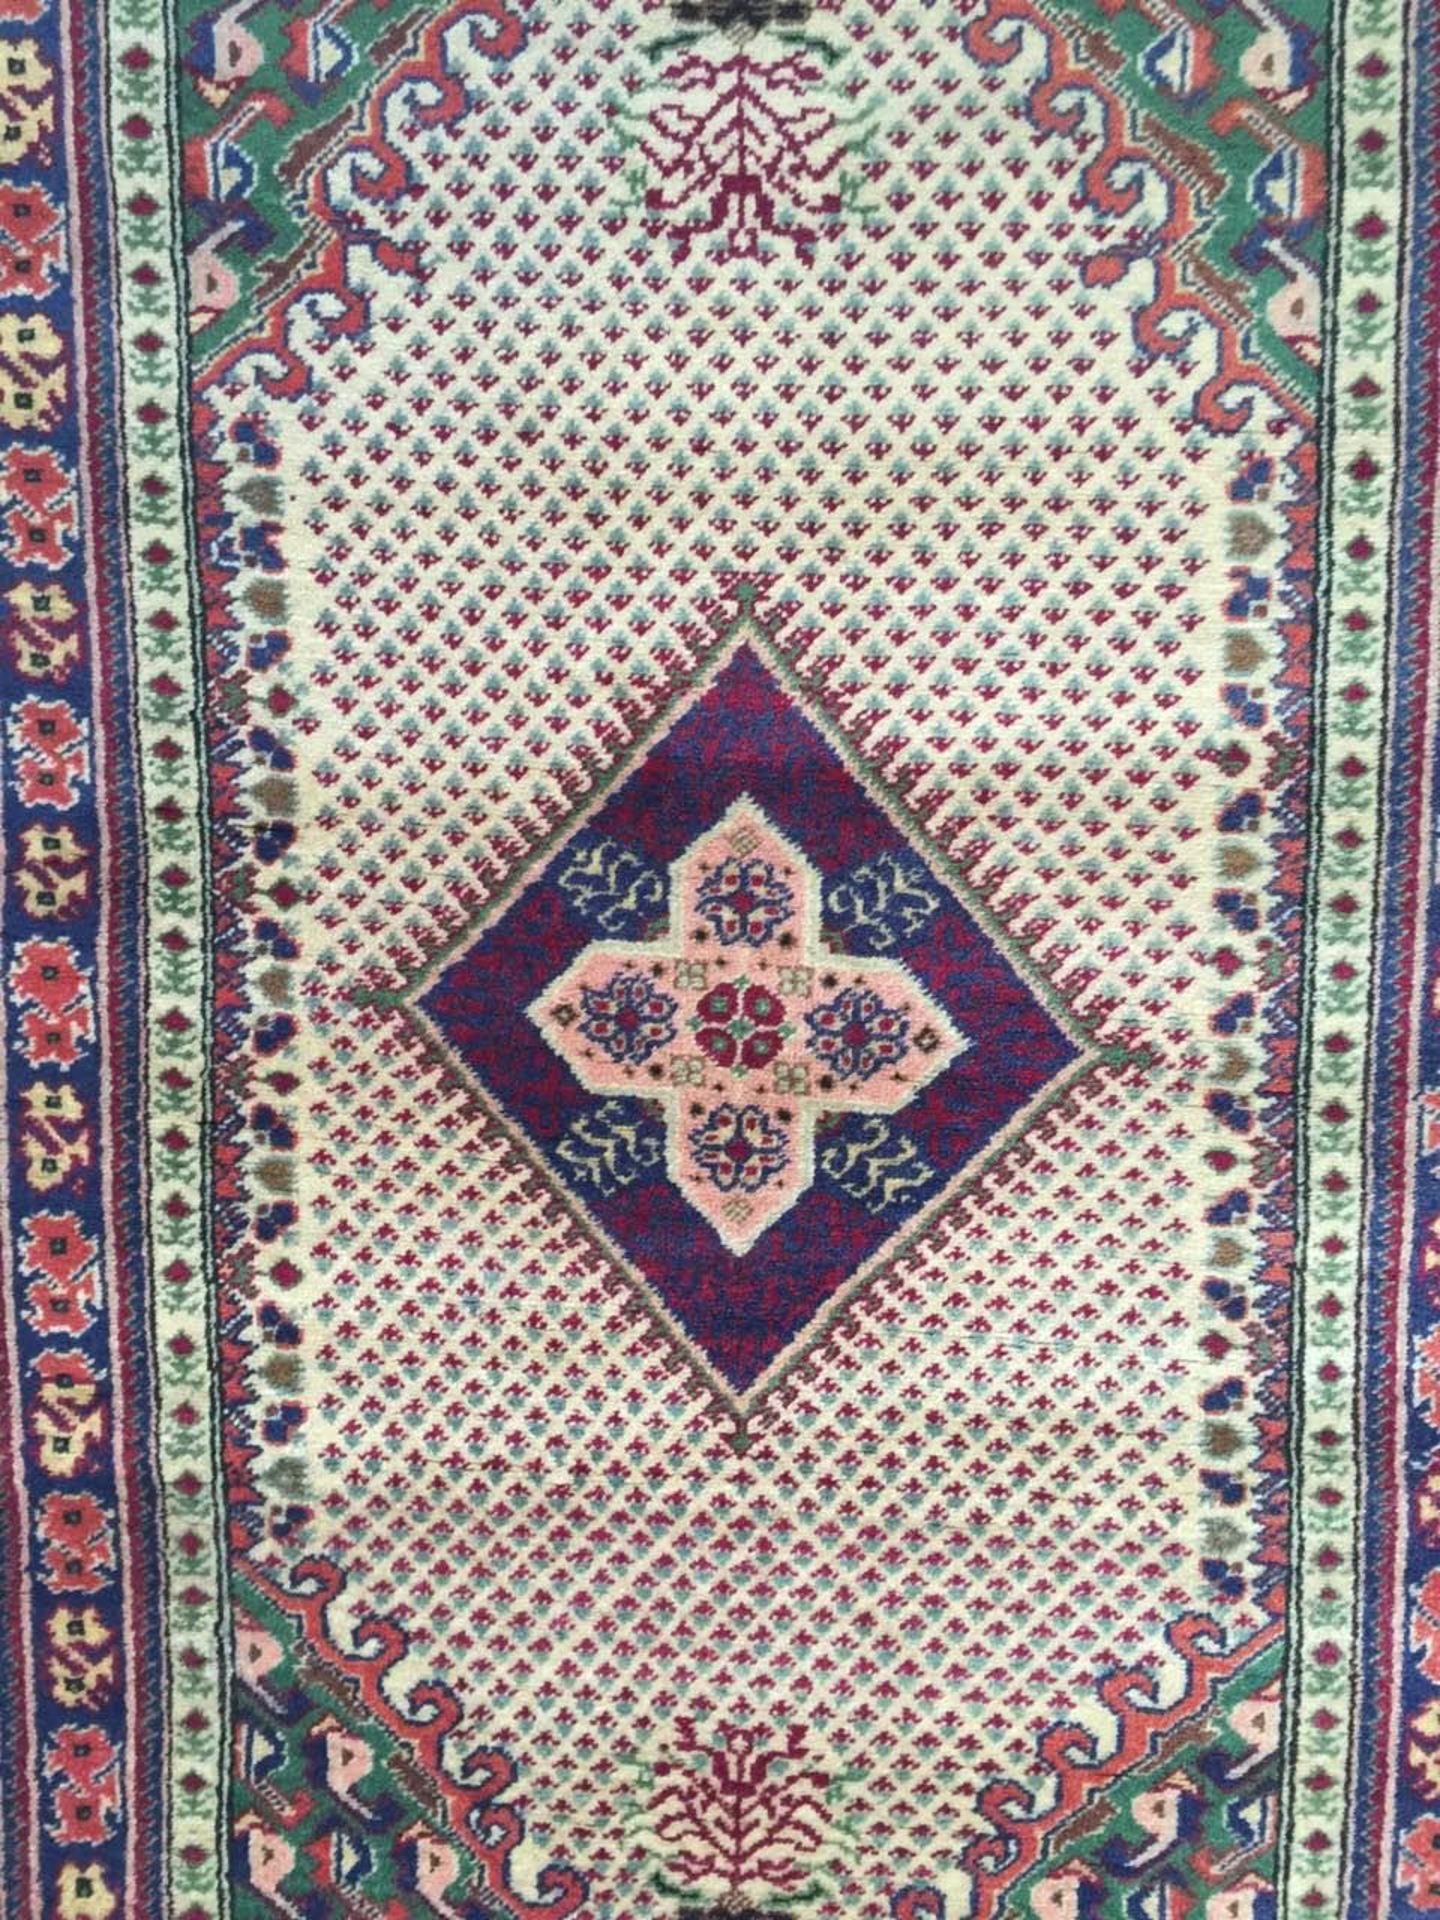 Tapis en laine anatolie turc 210 x 120 cm - Image 2 of 5